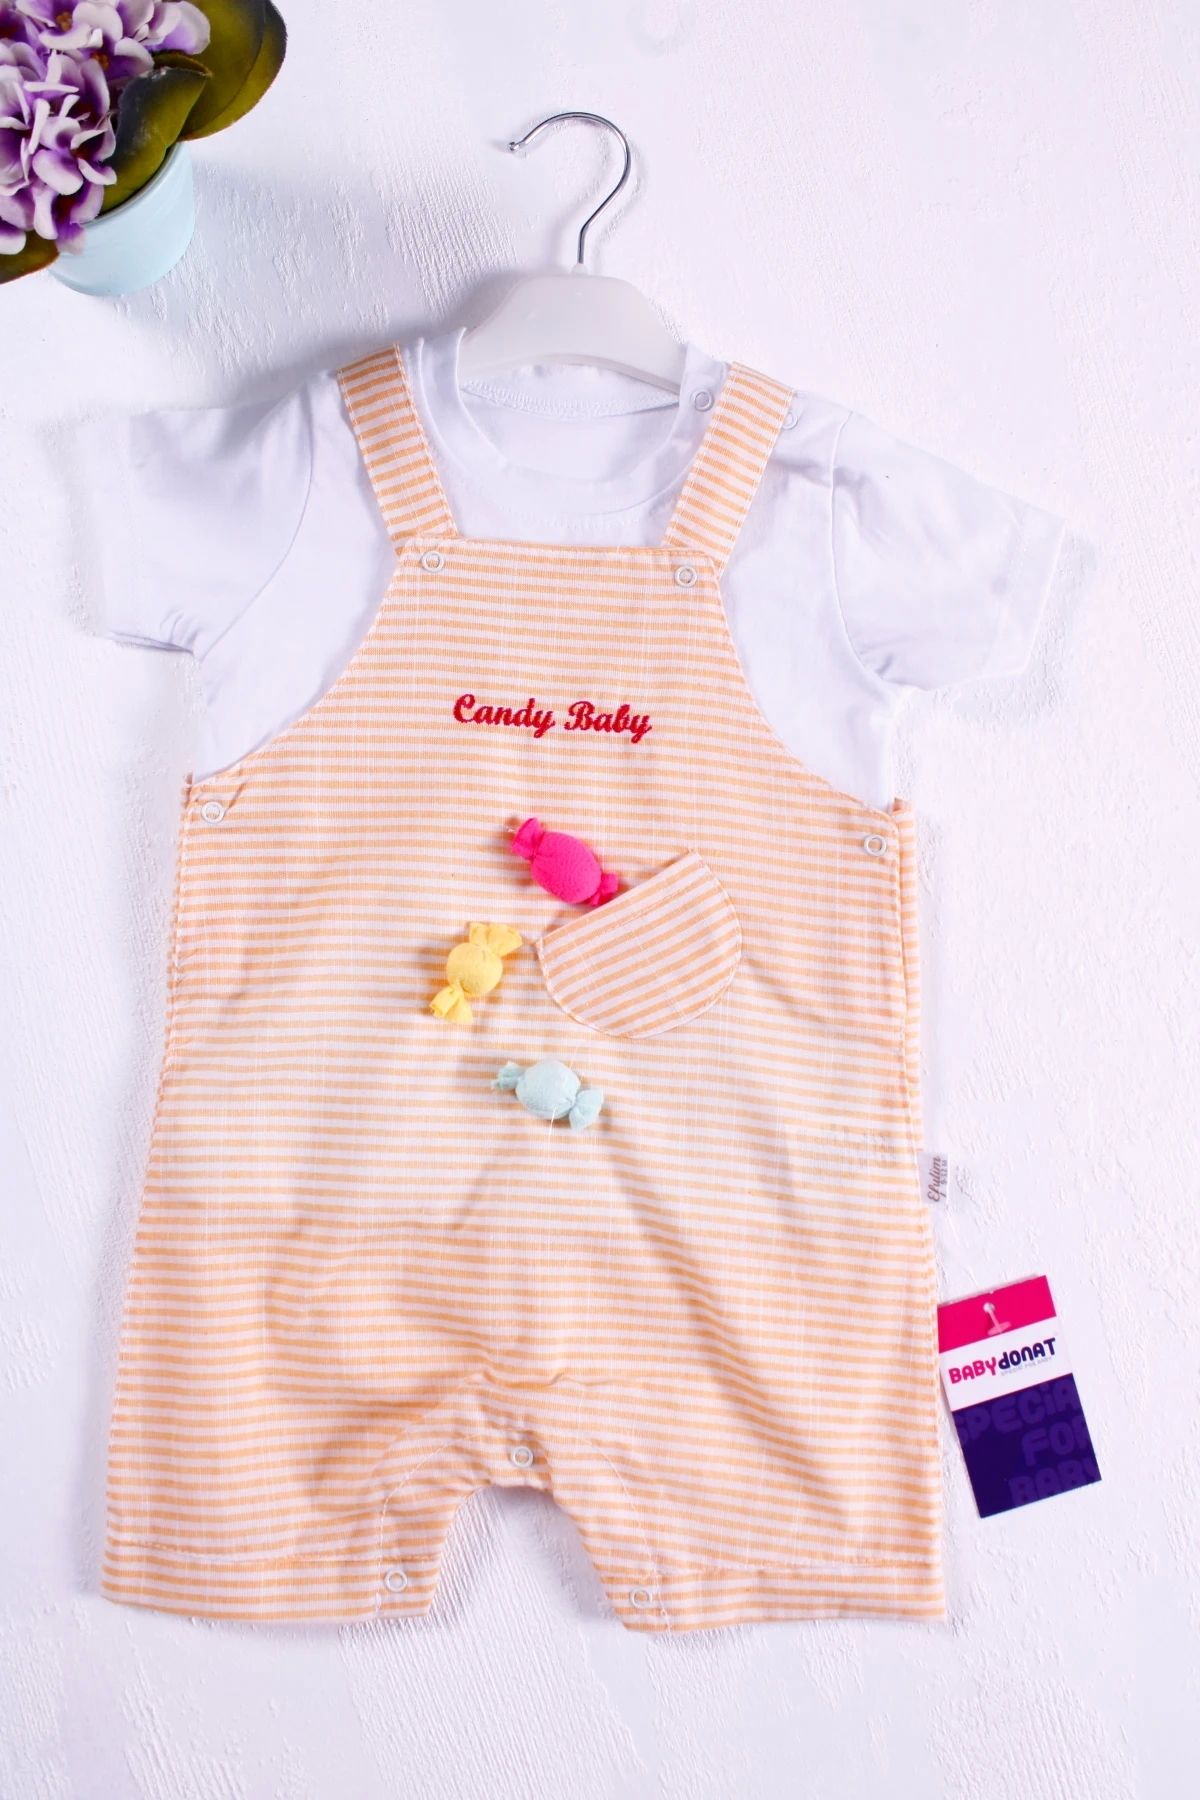 Babydonat Candy Figürlü Badili Kız Bebek Tulumu